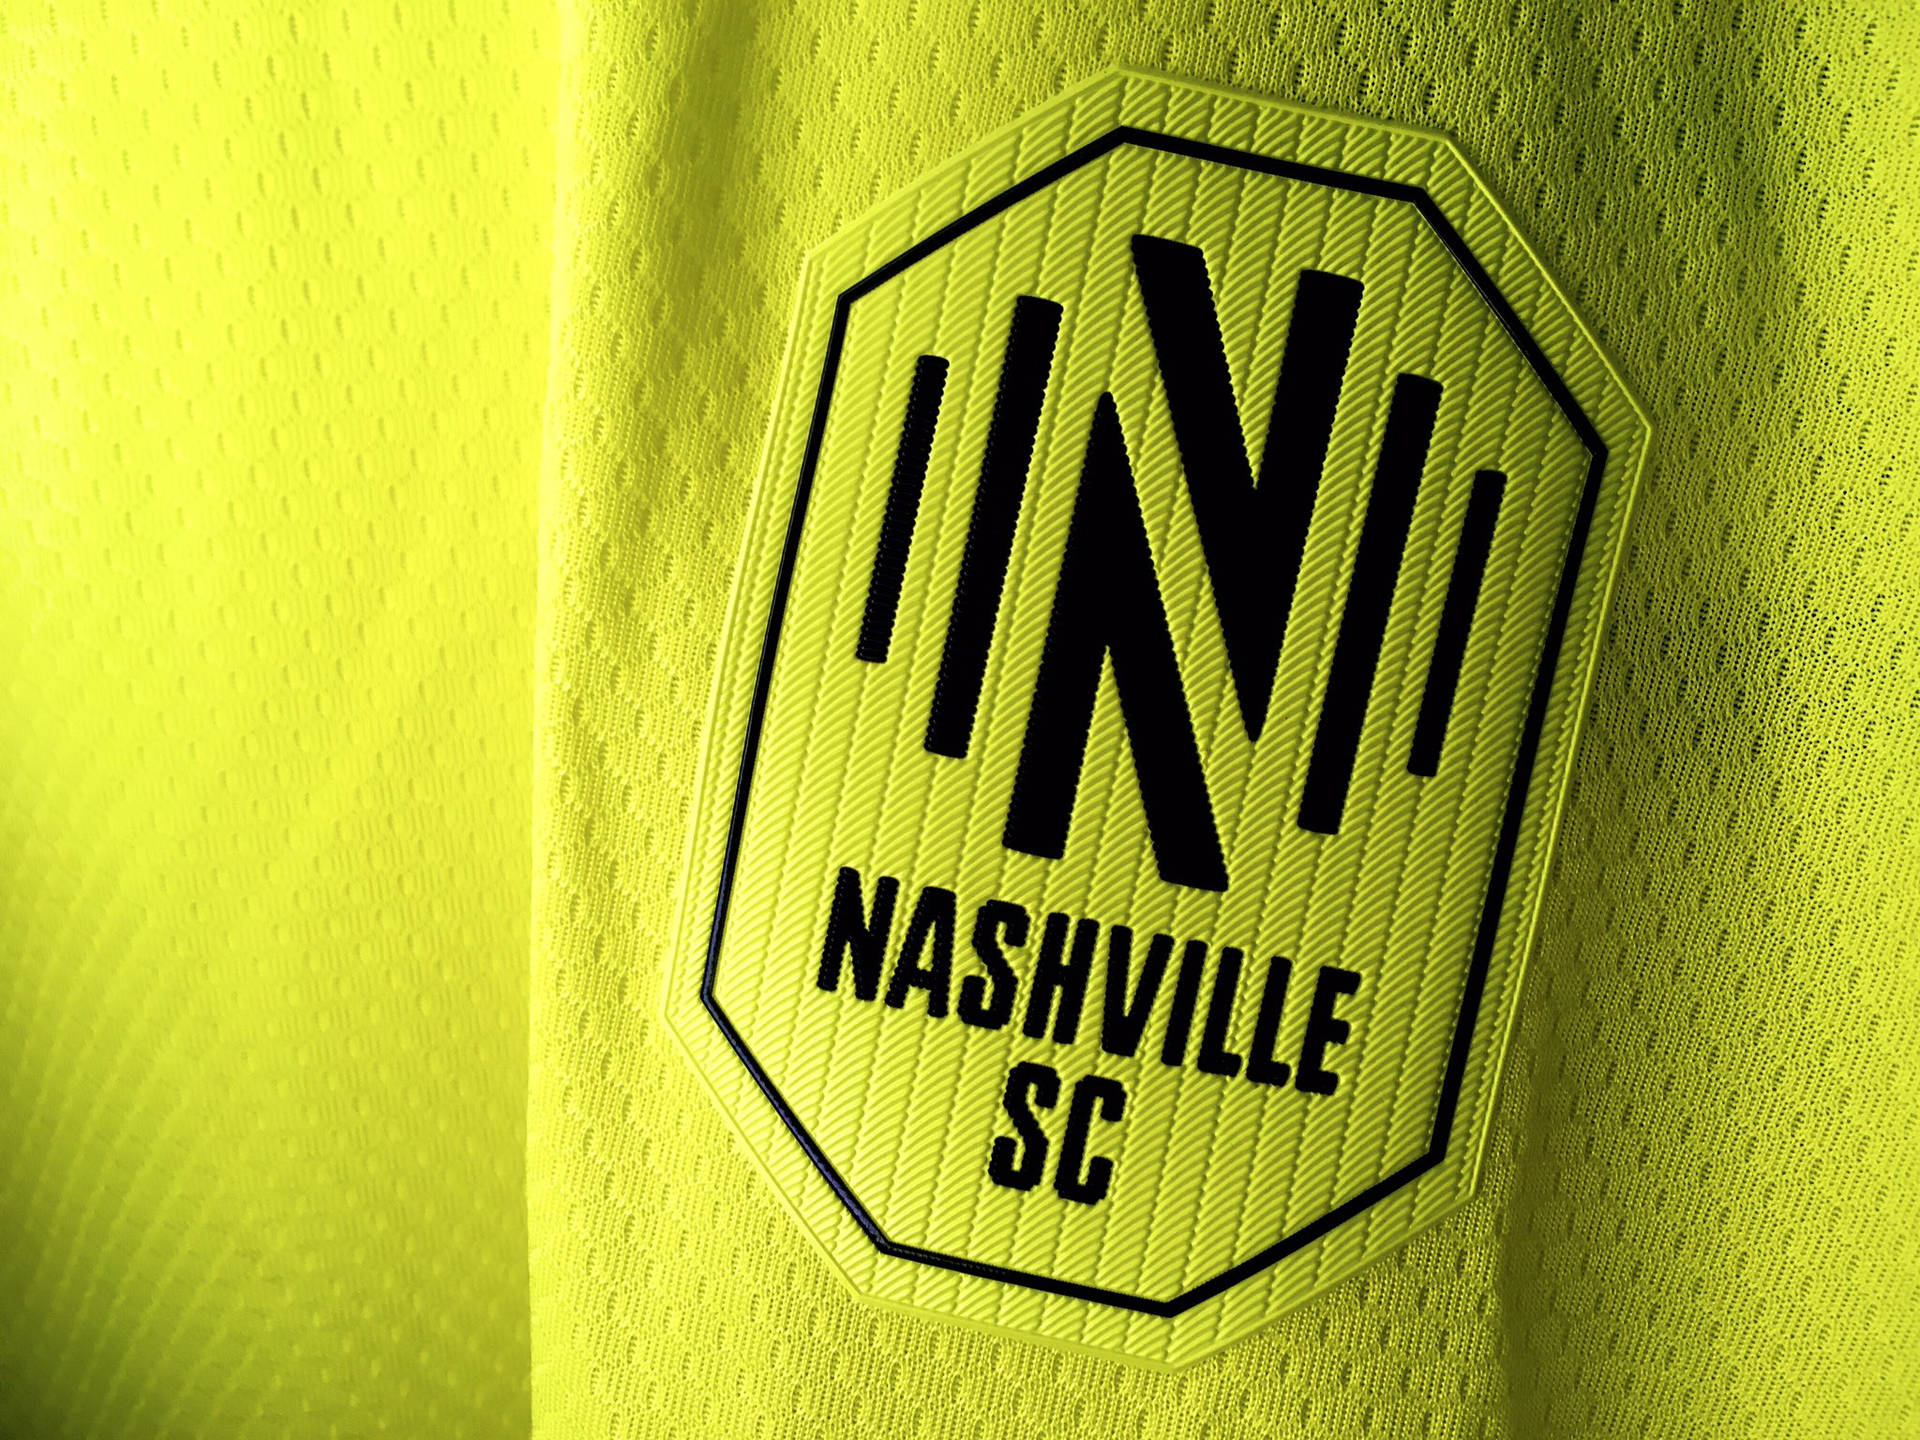 Nashville Sc Jersey Logo Wallpaper